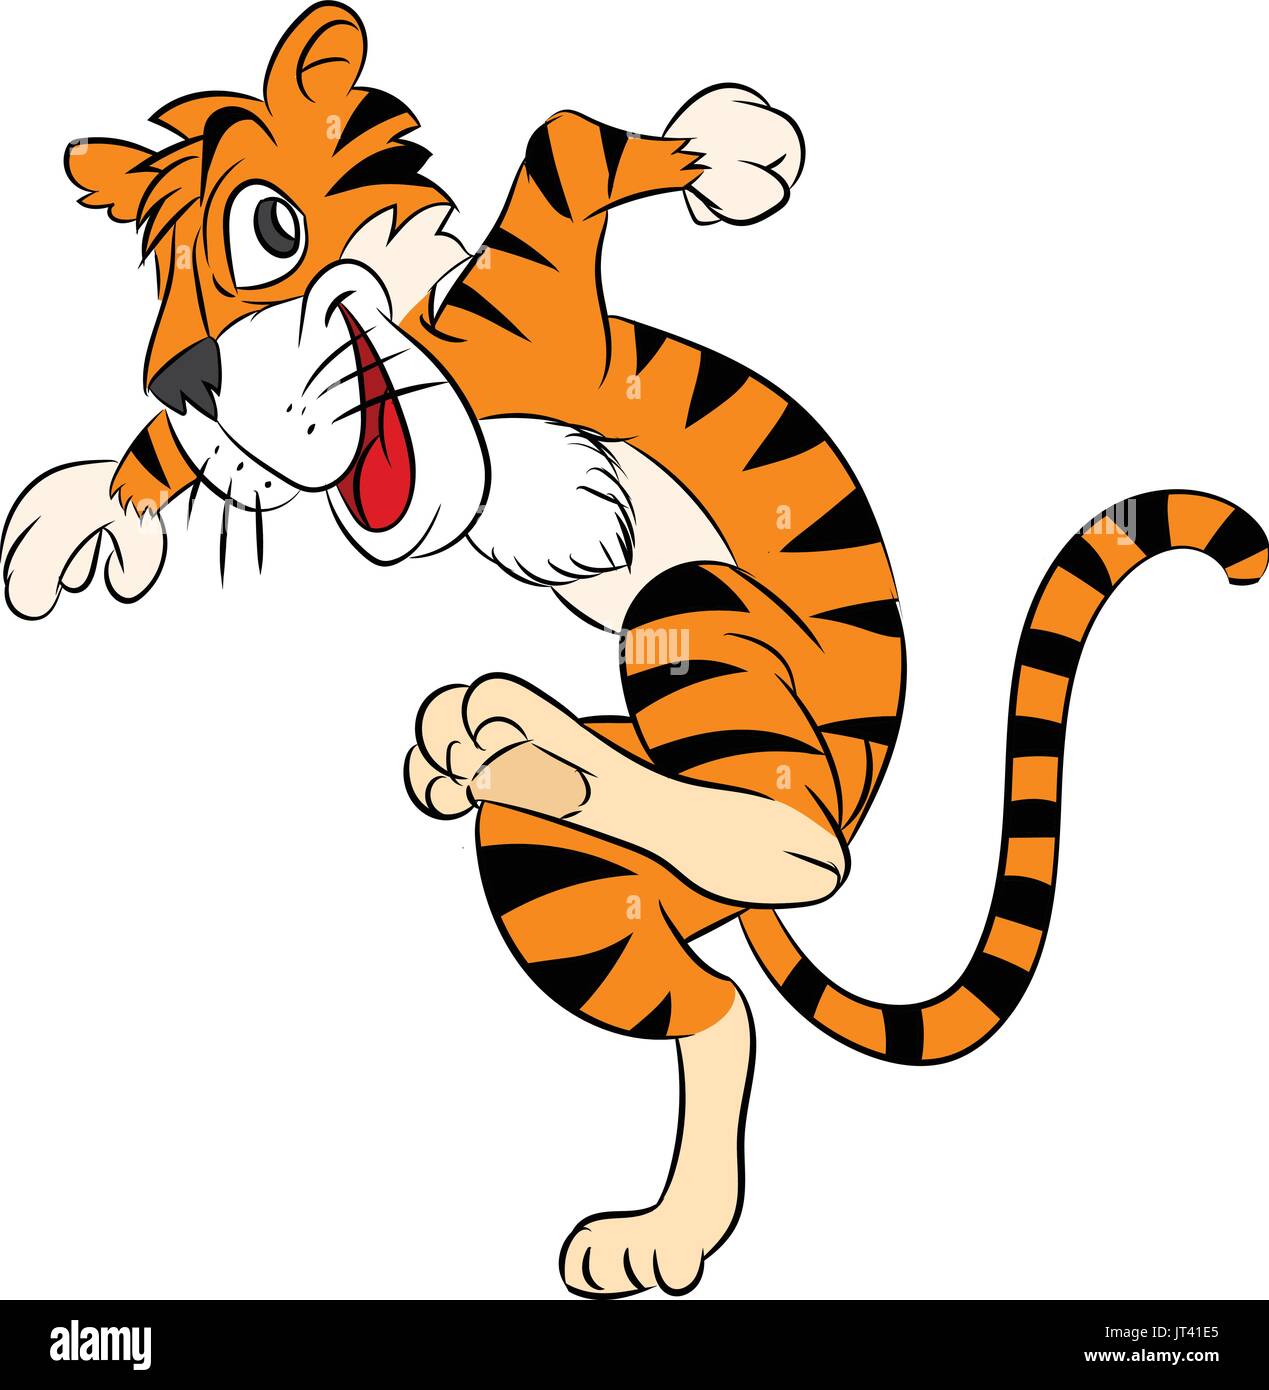 Tiger Running coloré Cartoon, heureux et s'exécutant sur fond blanc -  clipart Vector illustration Image Vectorielle Stock - Alamy